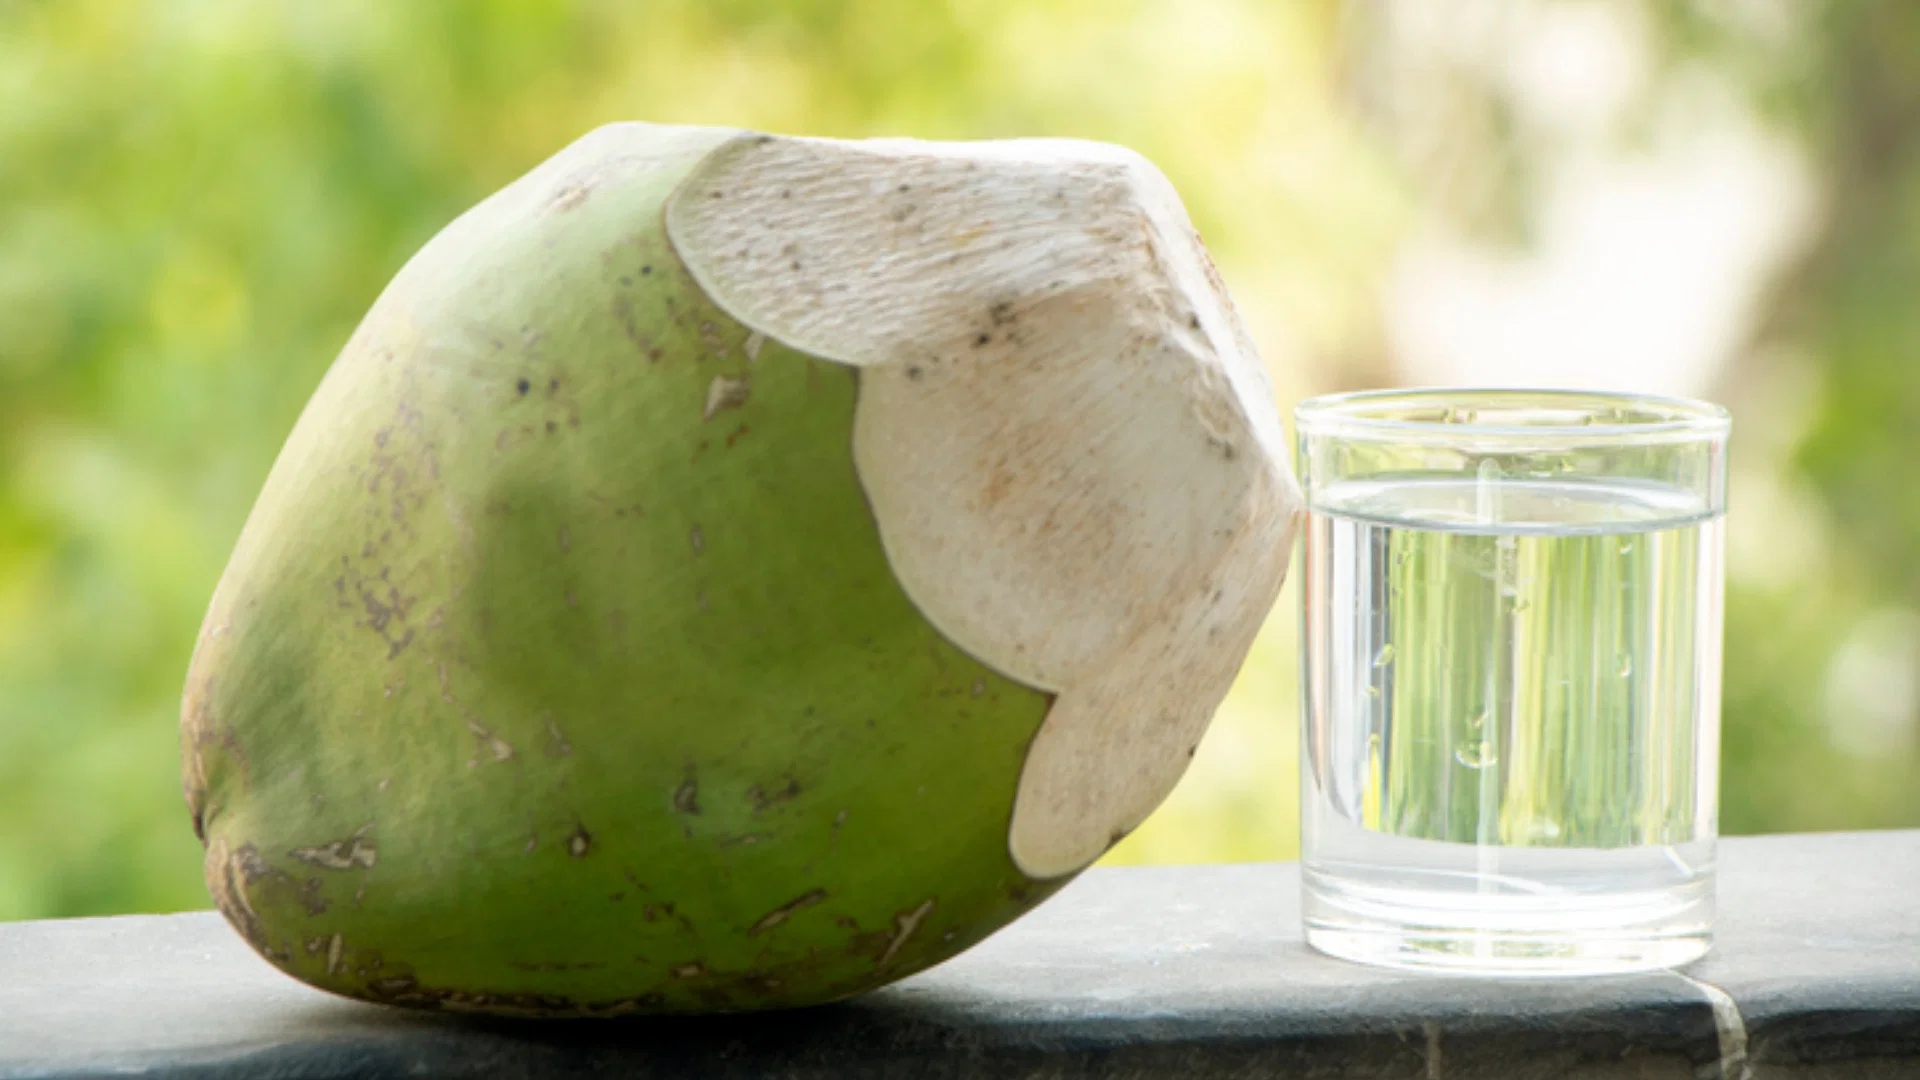 How to identify Coconut: क्या नारियल में मलाई या पानी की मात्रा अधिक है, कैसे पता चलता है?  ये सुझाव आपको पहचानने में मदद करेंगे।